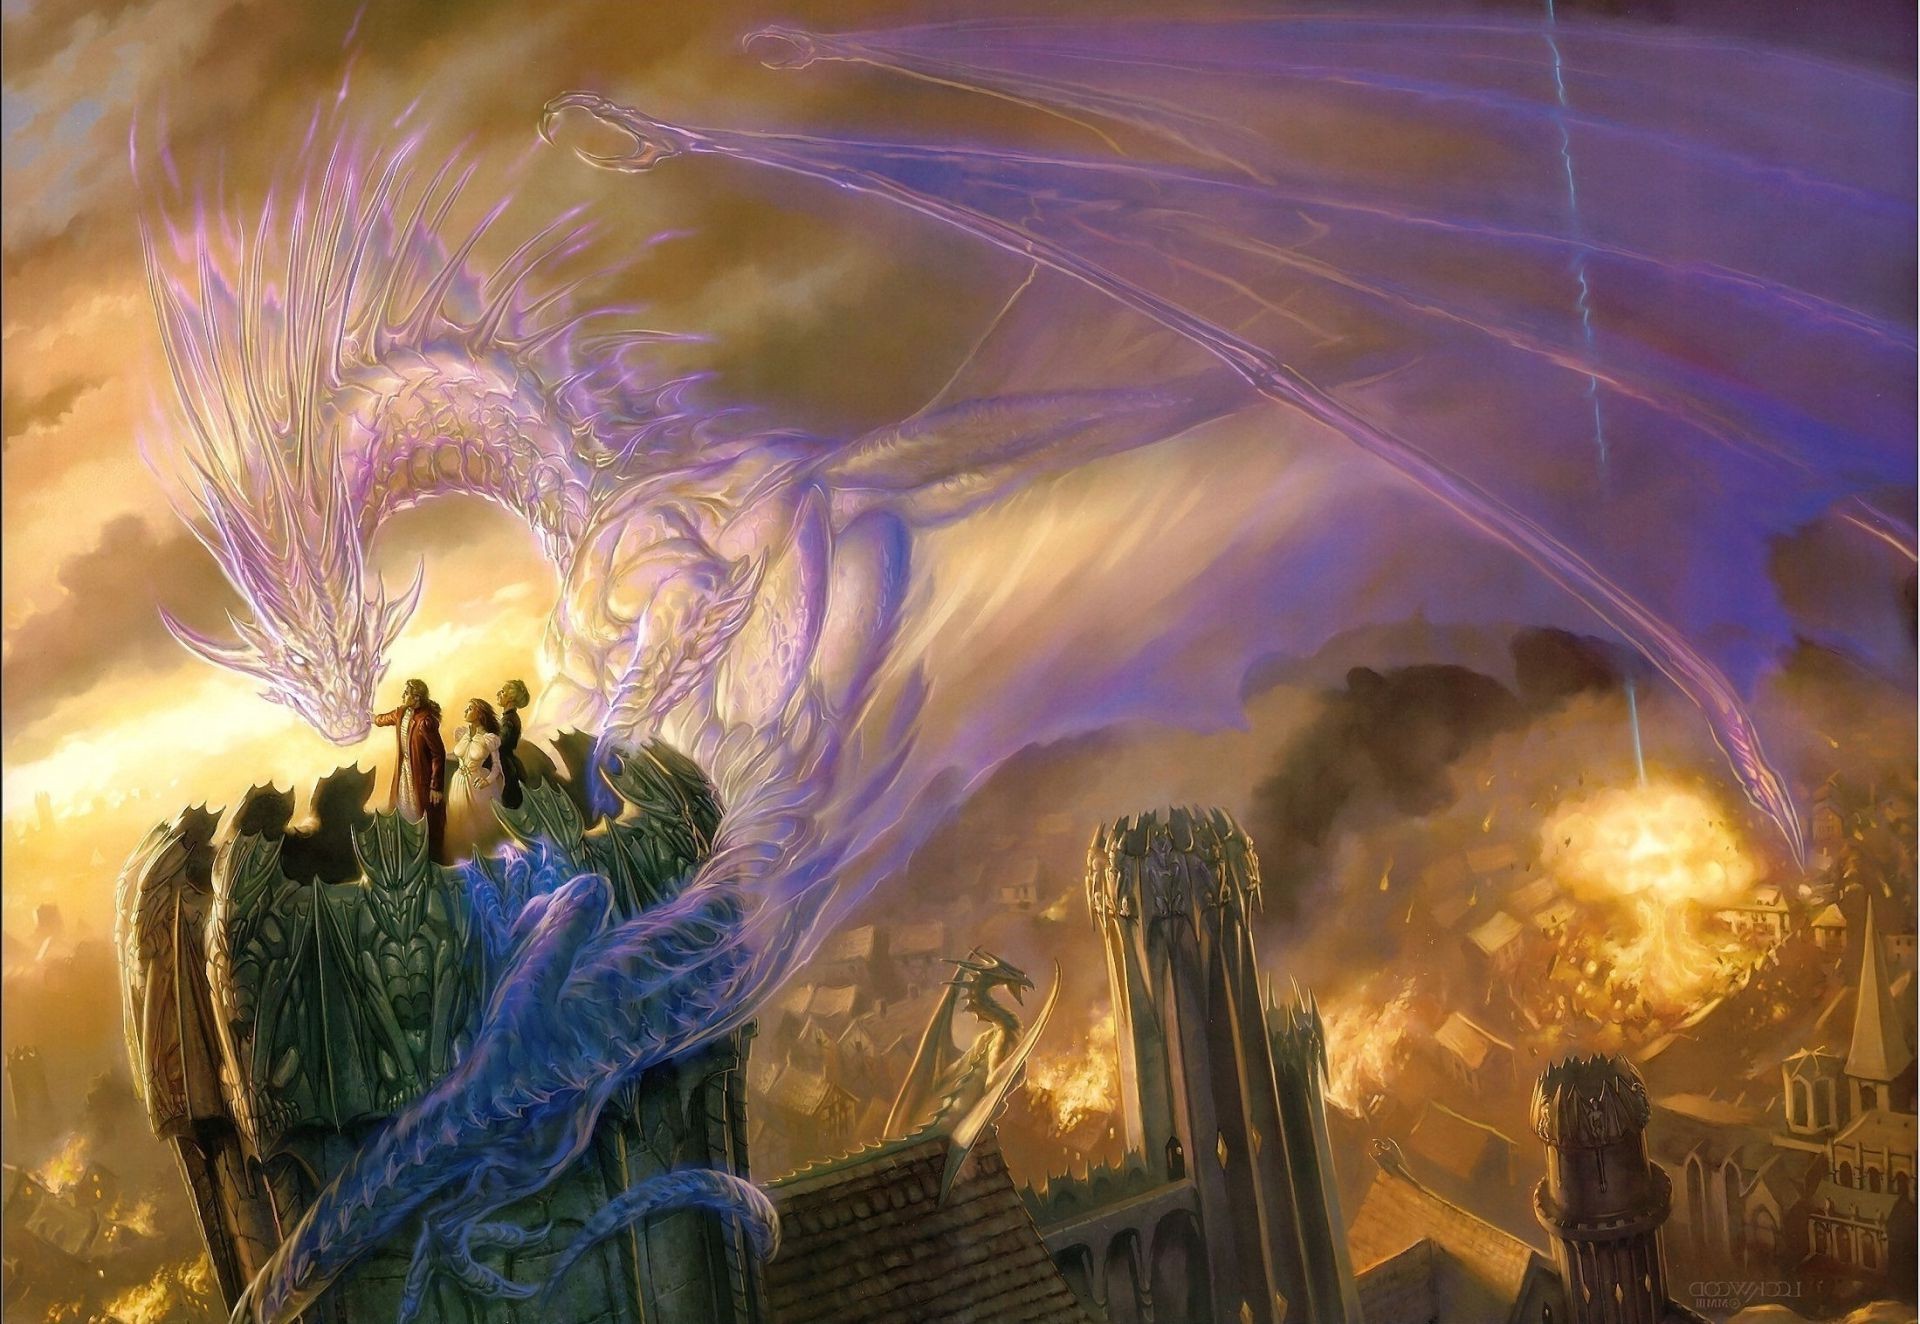 драконы свет пламя искусство аннотация религия фестиваль фантазия дым сюрреалистично